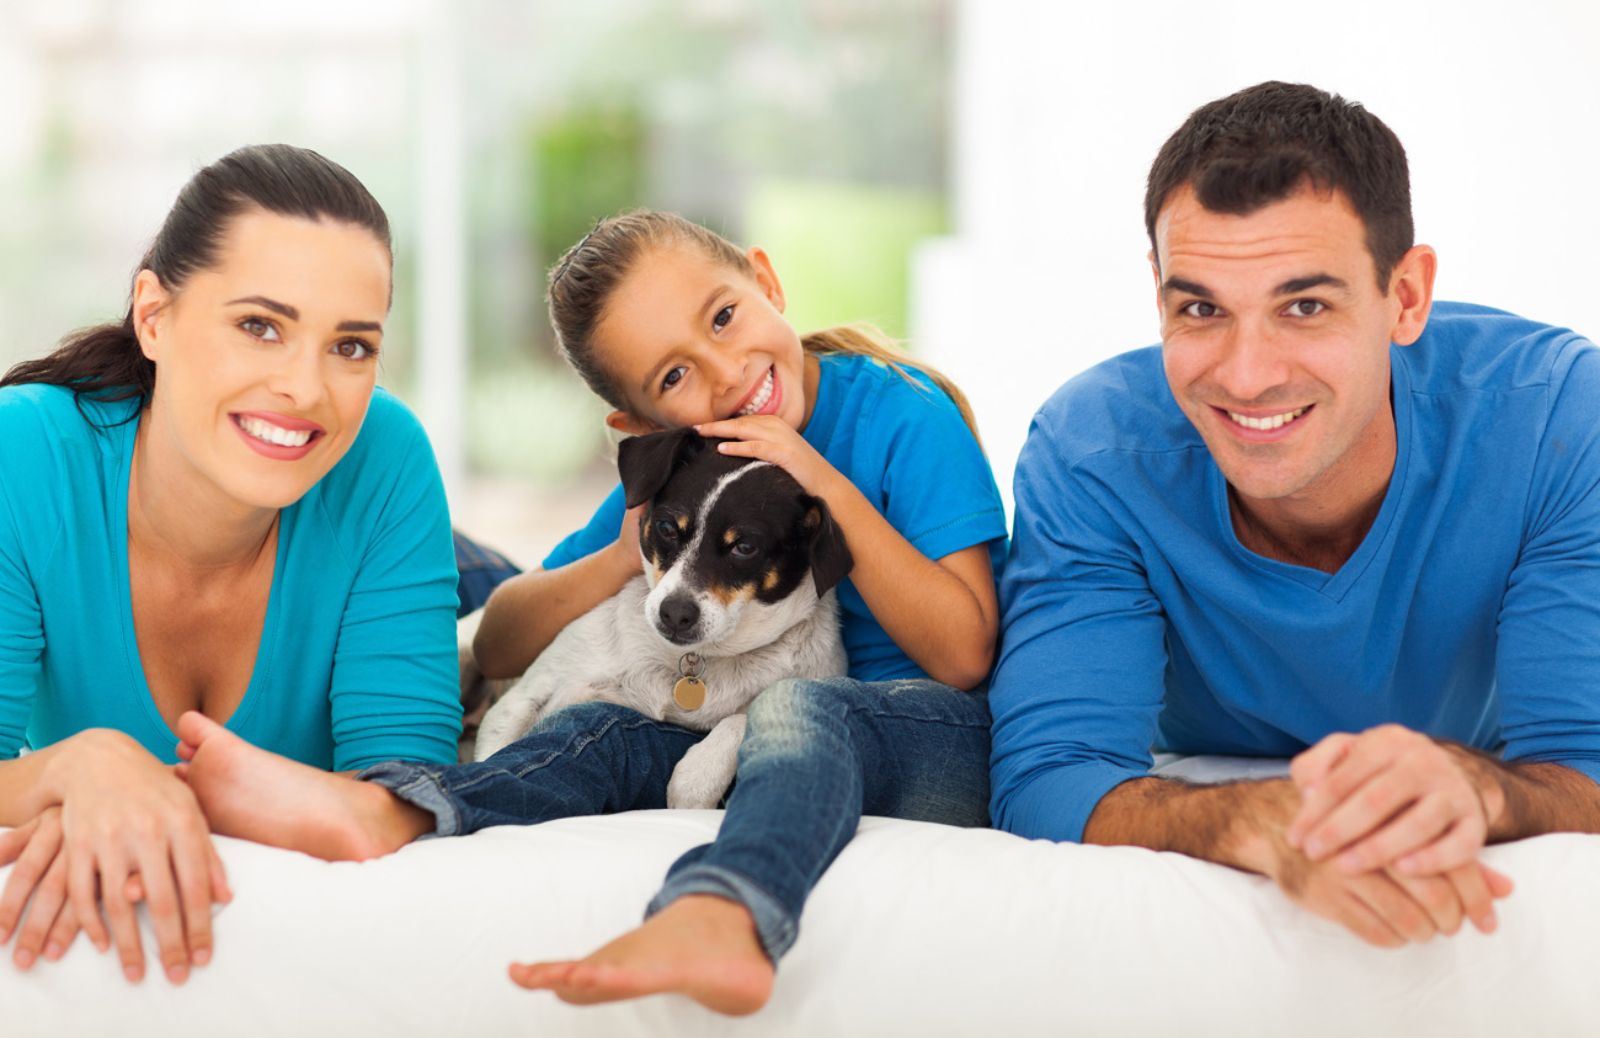 Le famiglie con un pet sono più unite e felici 